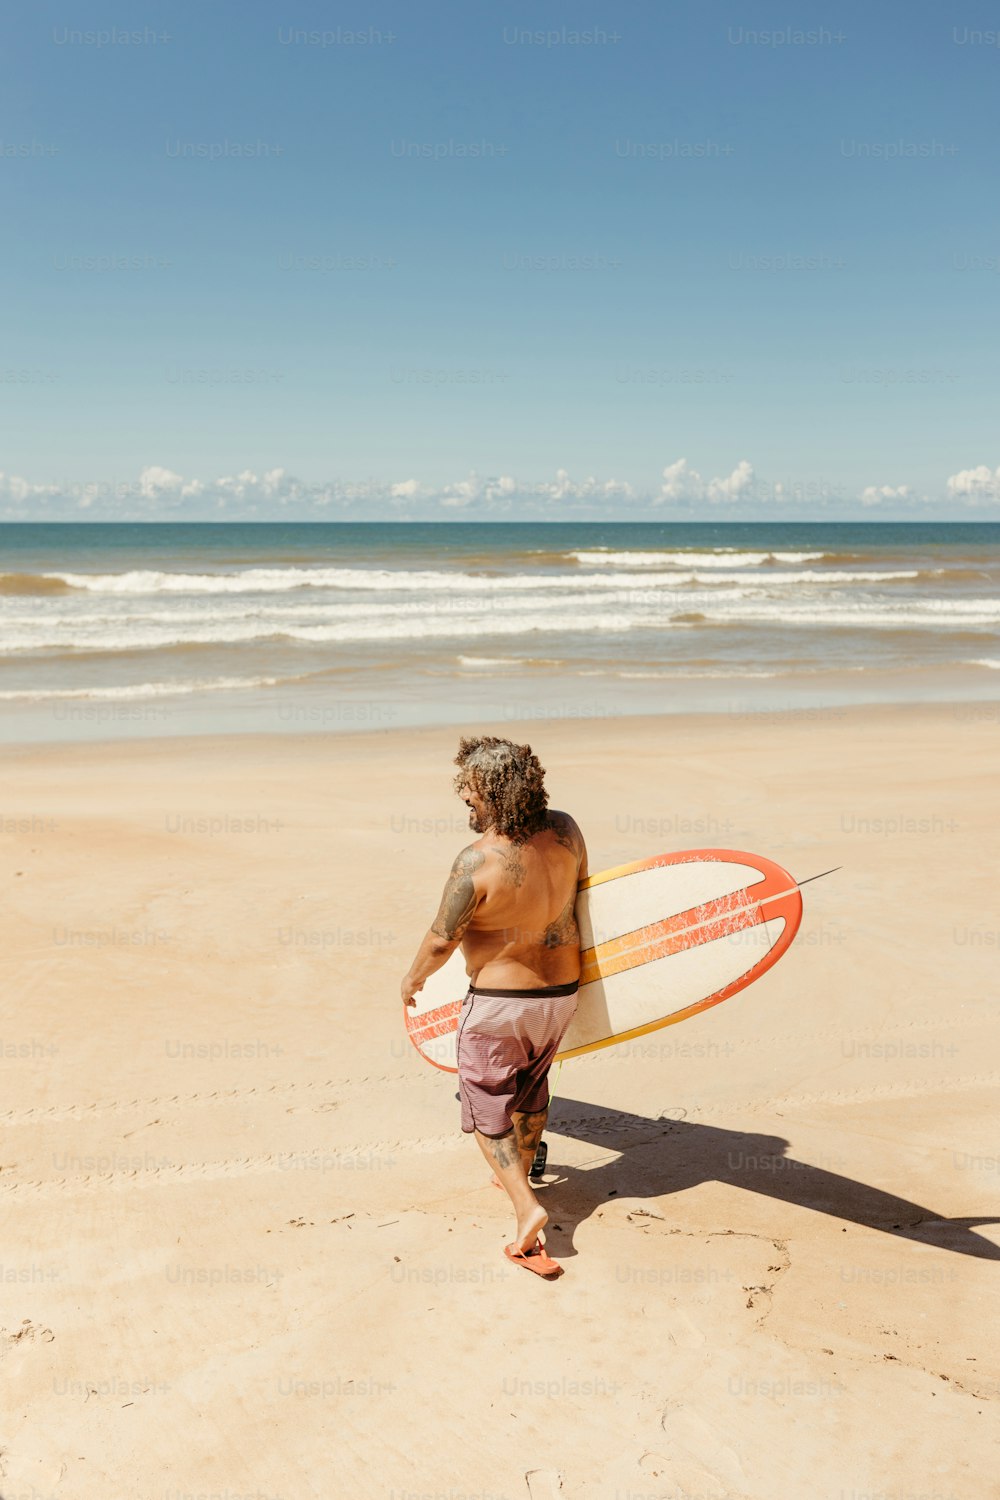 서핑보드를 들고 해변을 걷고 있는 남자